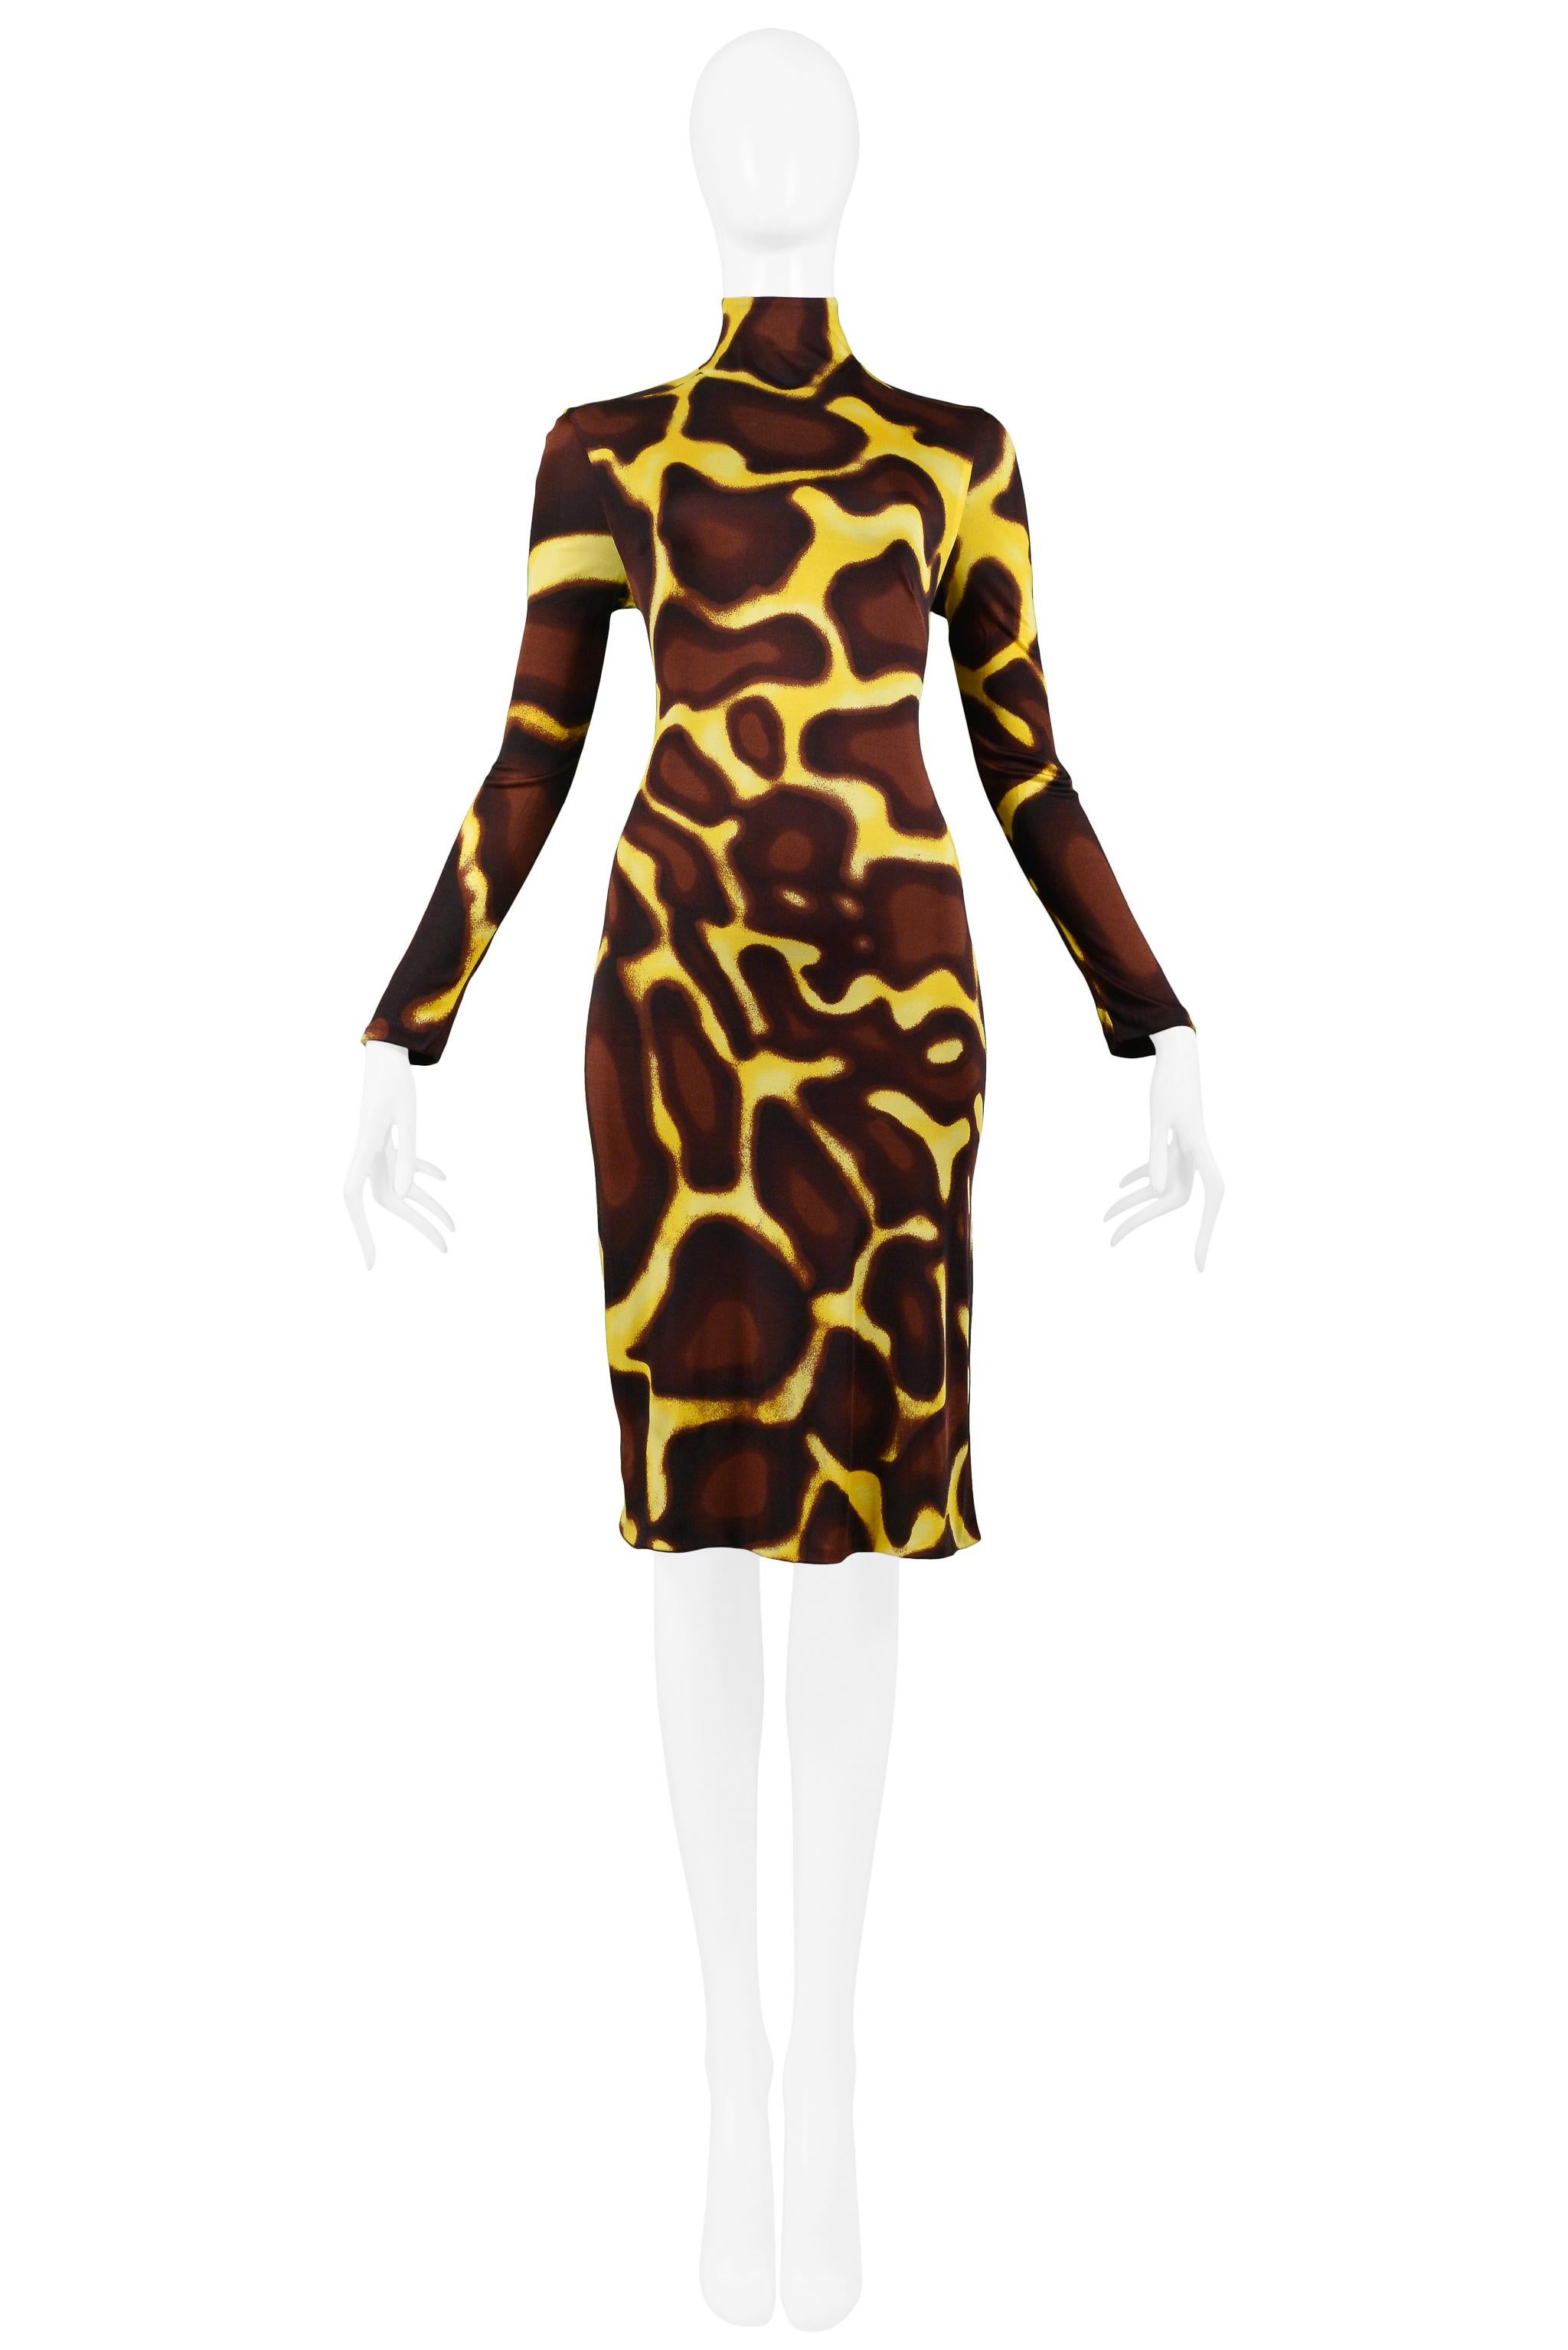 giraffe dress